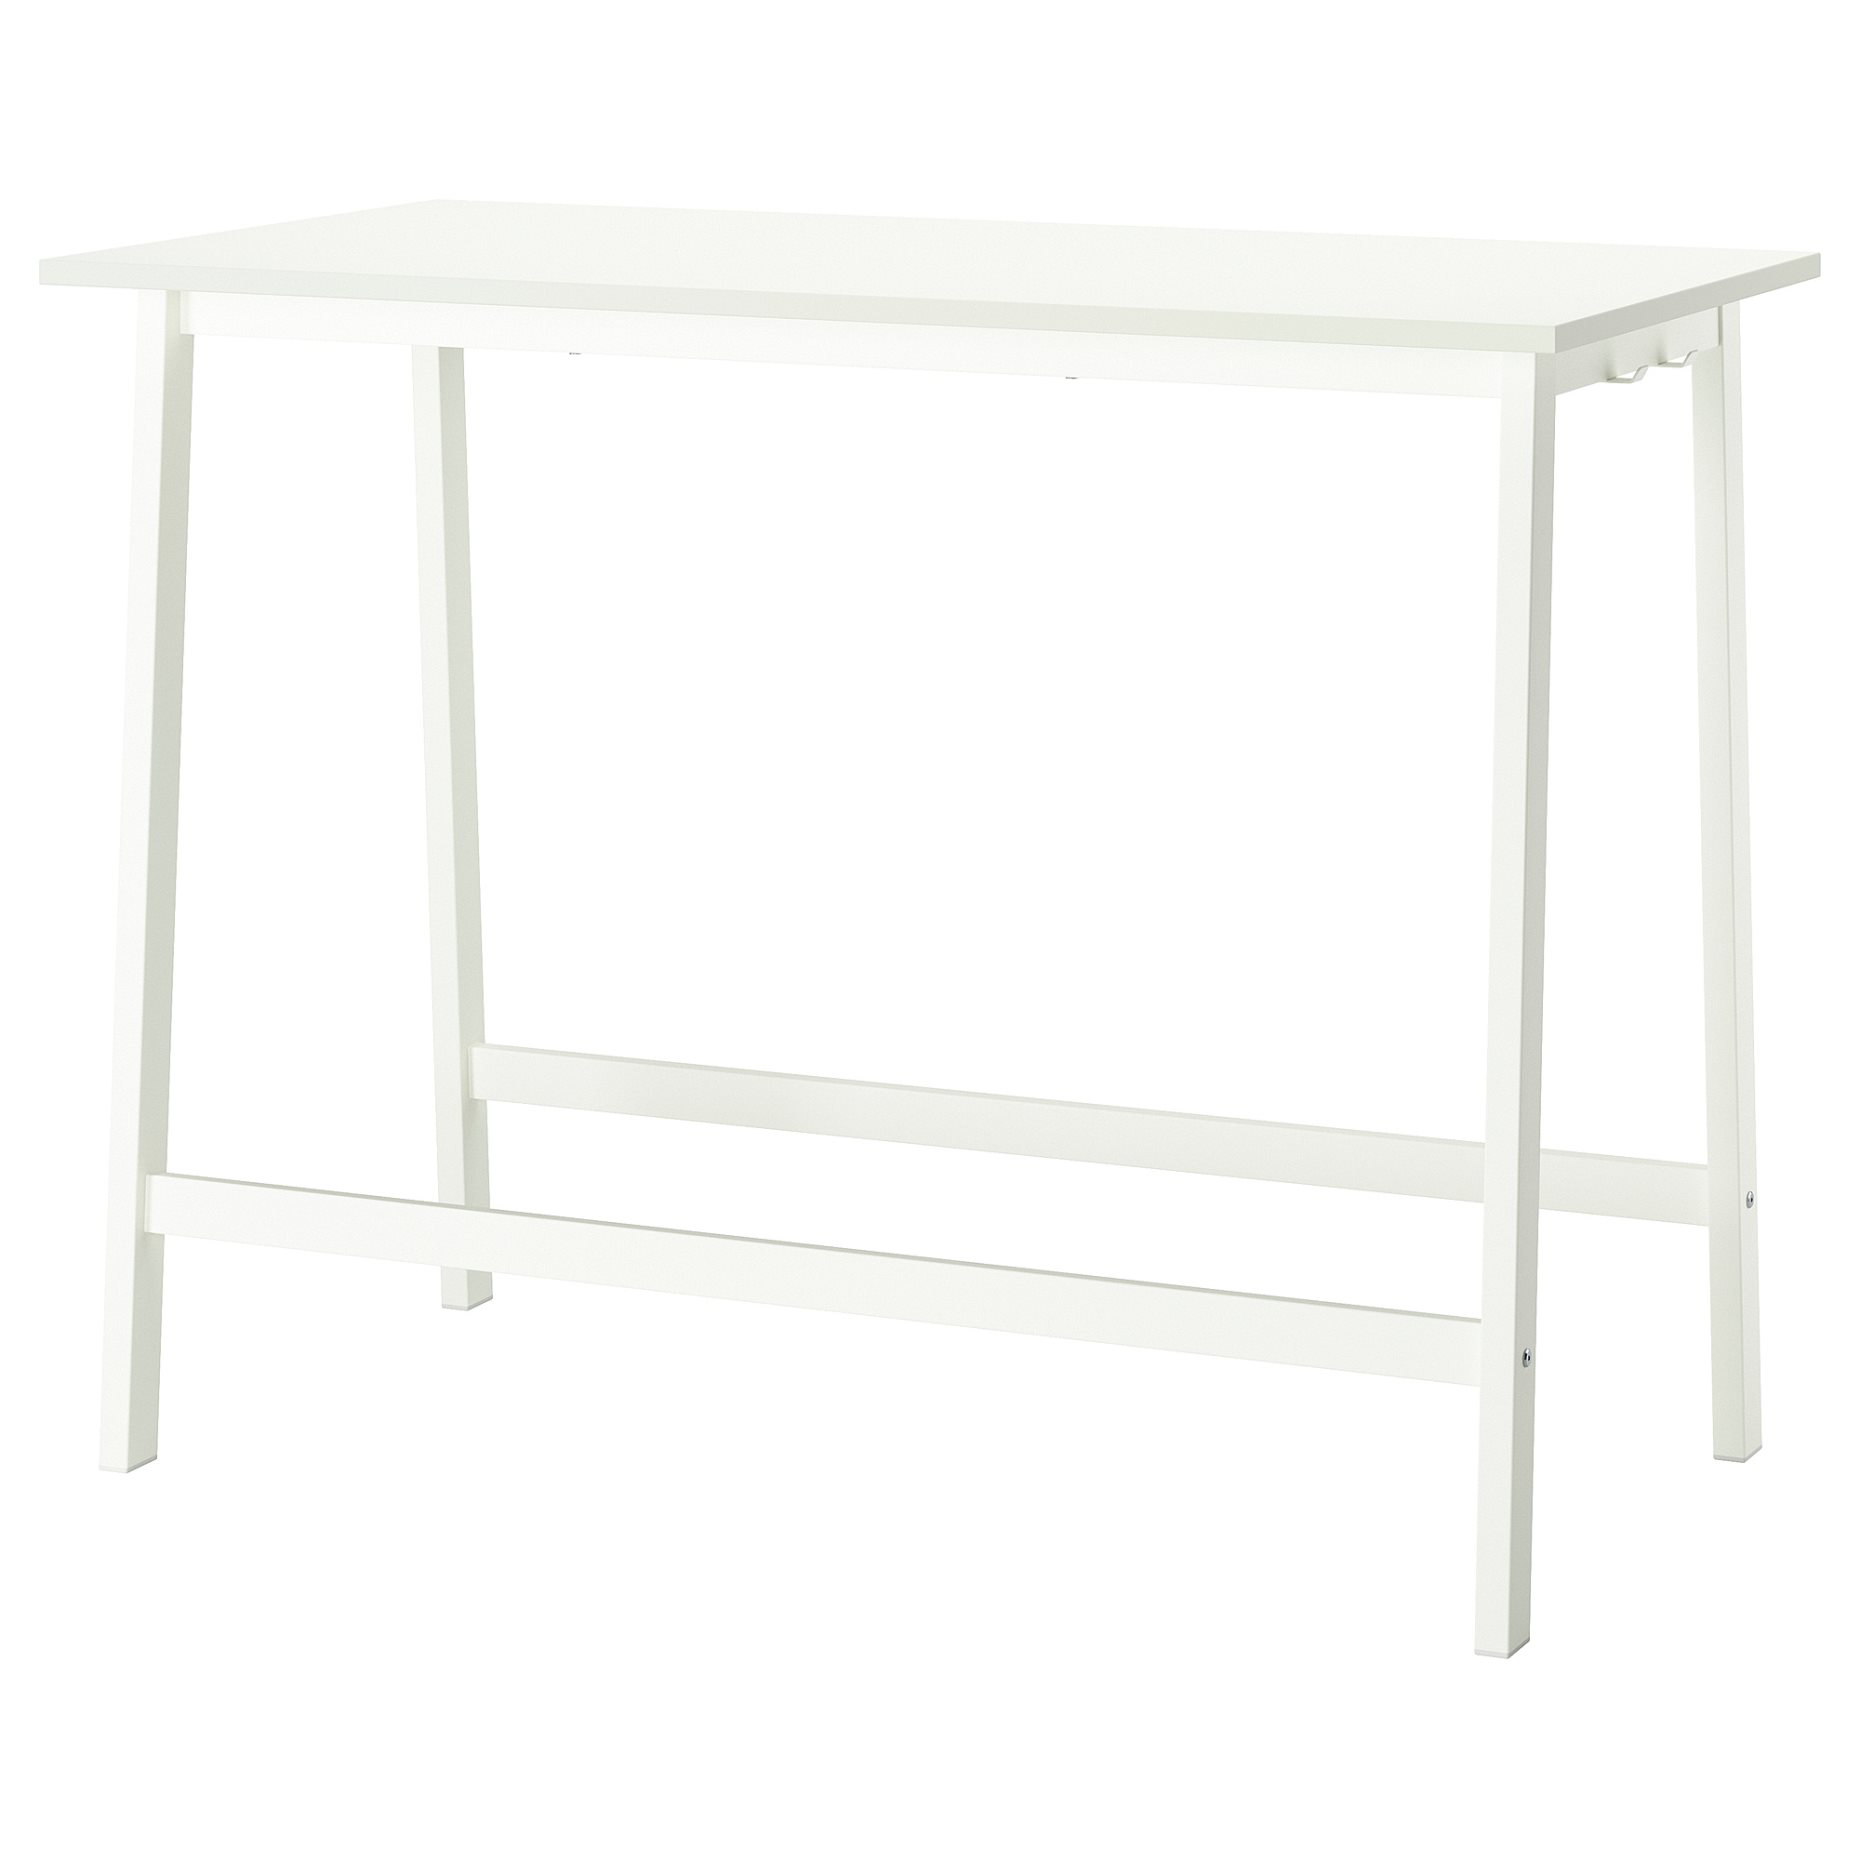 MITTZON, table top, 140x68 cm, 505.156.00